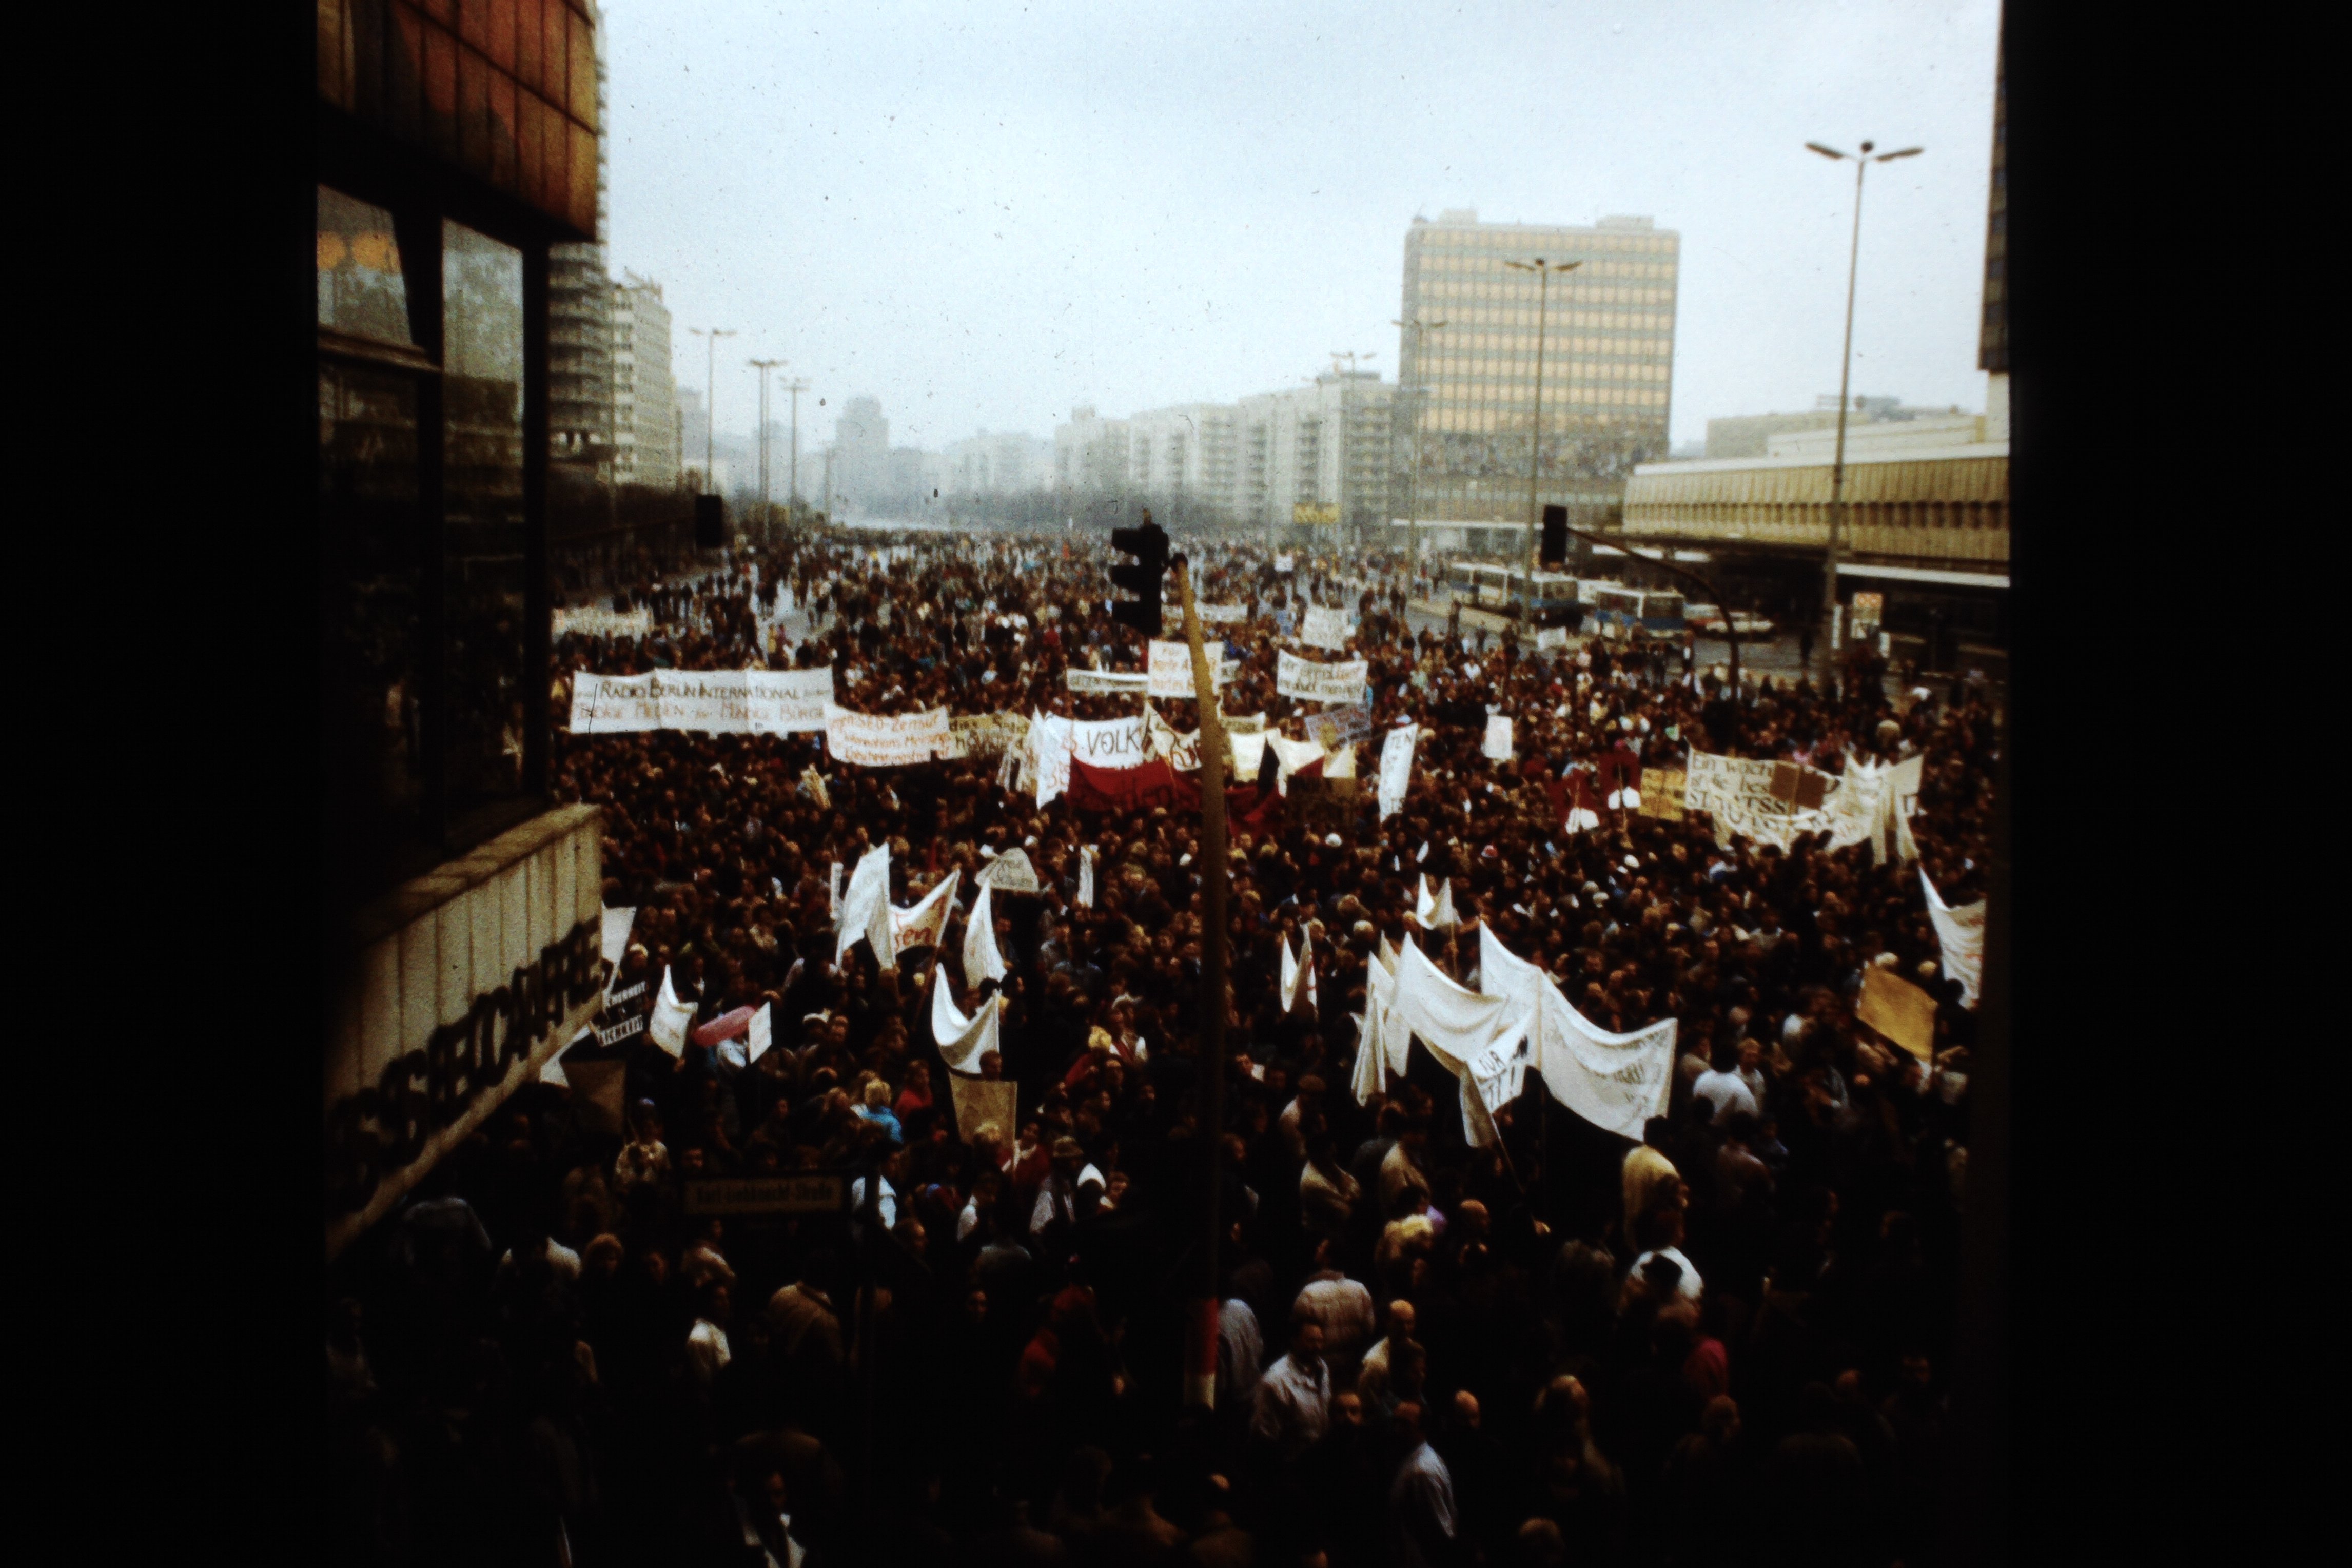 Großdemonstration in Ost-Berlin am 04. November 1989: Demonstranten auf der Karl-Liebknecht-Straße (DDR Geschichtsmuseum im Dokumentationszentrum Perleberg CC BY-SA)